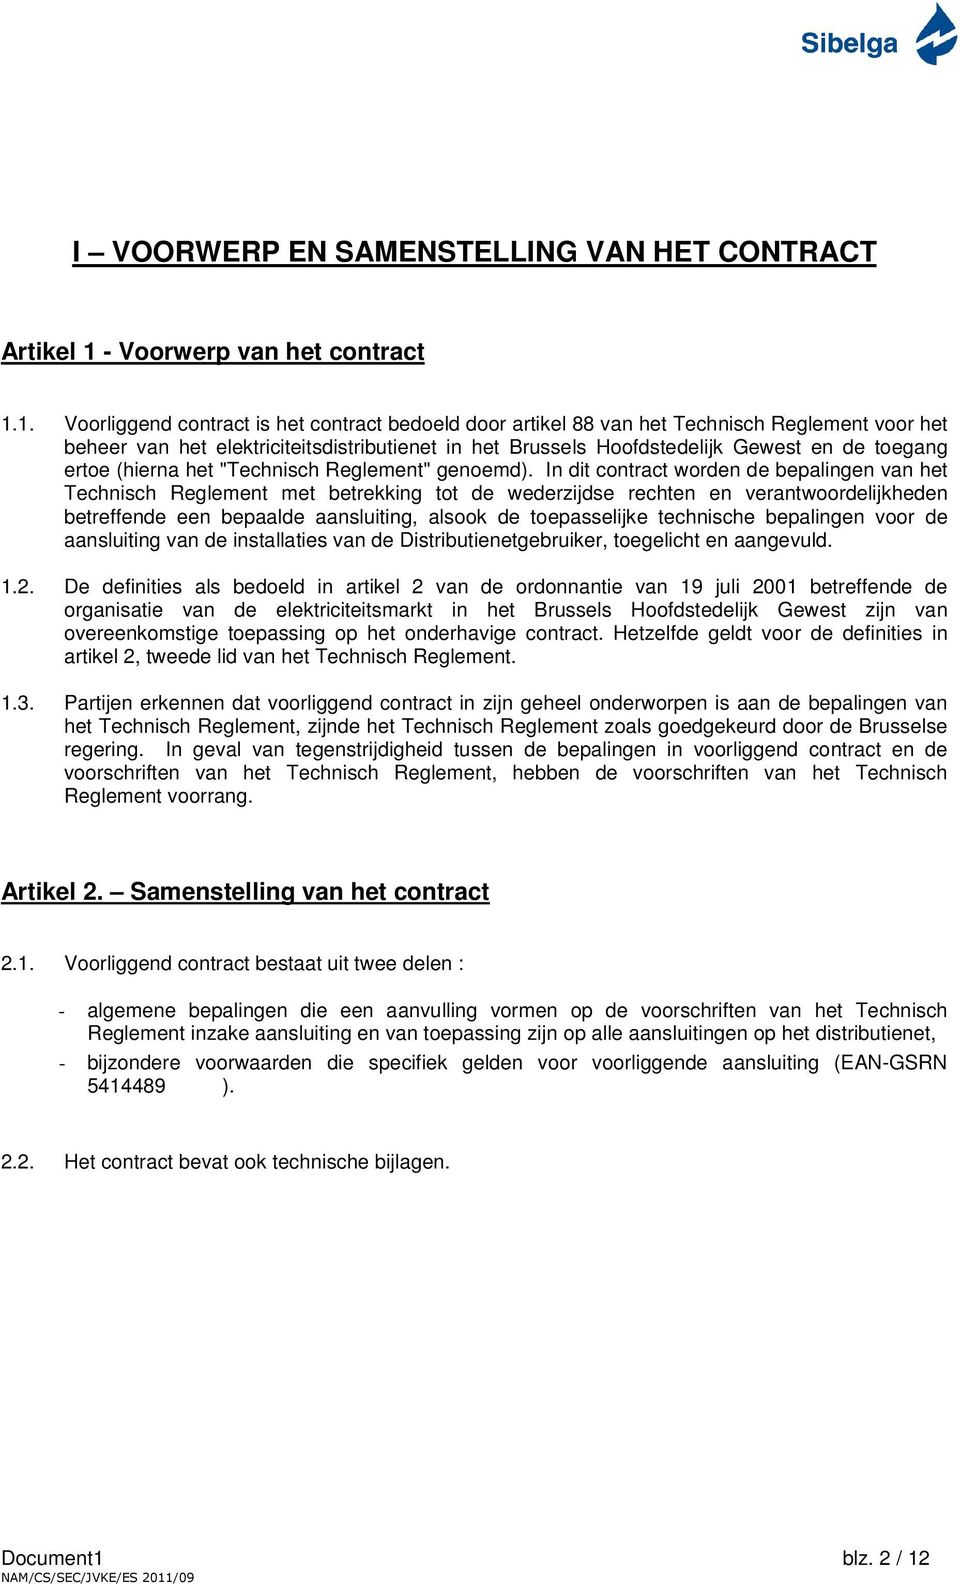 1. Voorliggend contract is het contract bedoeld door artikel 88 van het Technisch Reglement voor het beheer van het elektriciteitsdistributienet in het Brussels Hoofdstedelijk Gewest en de toegang